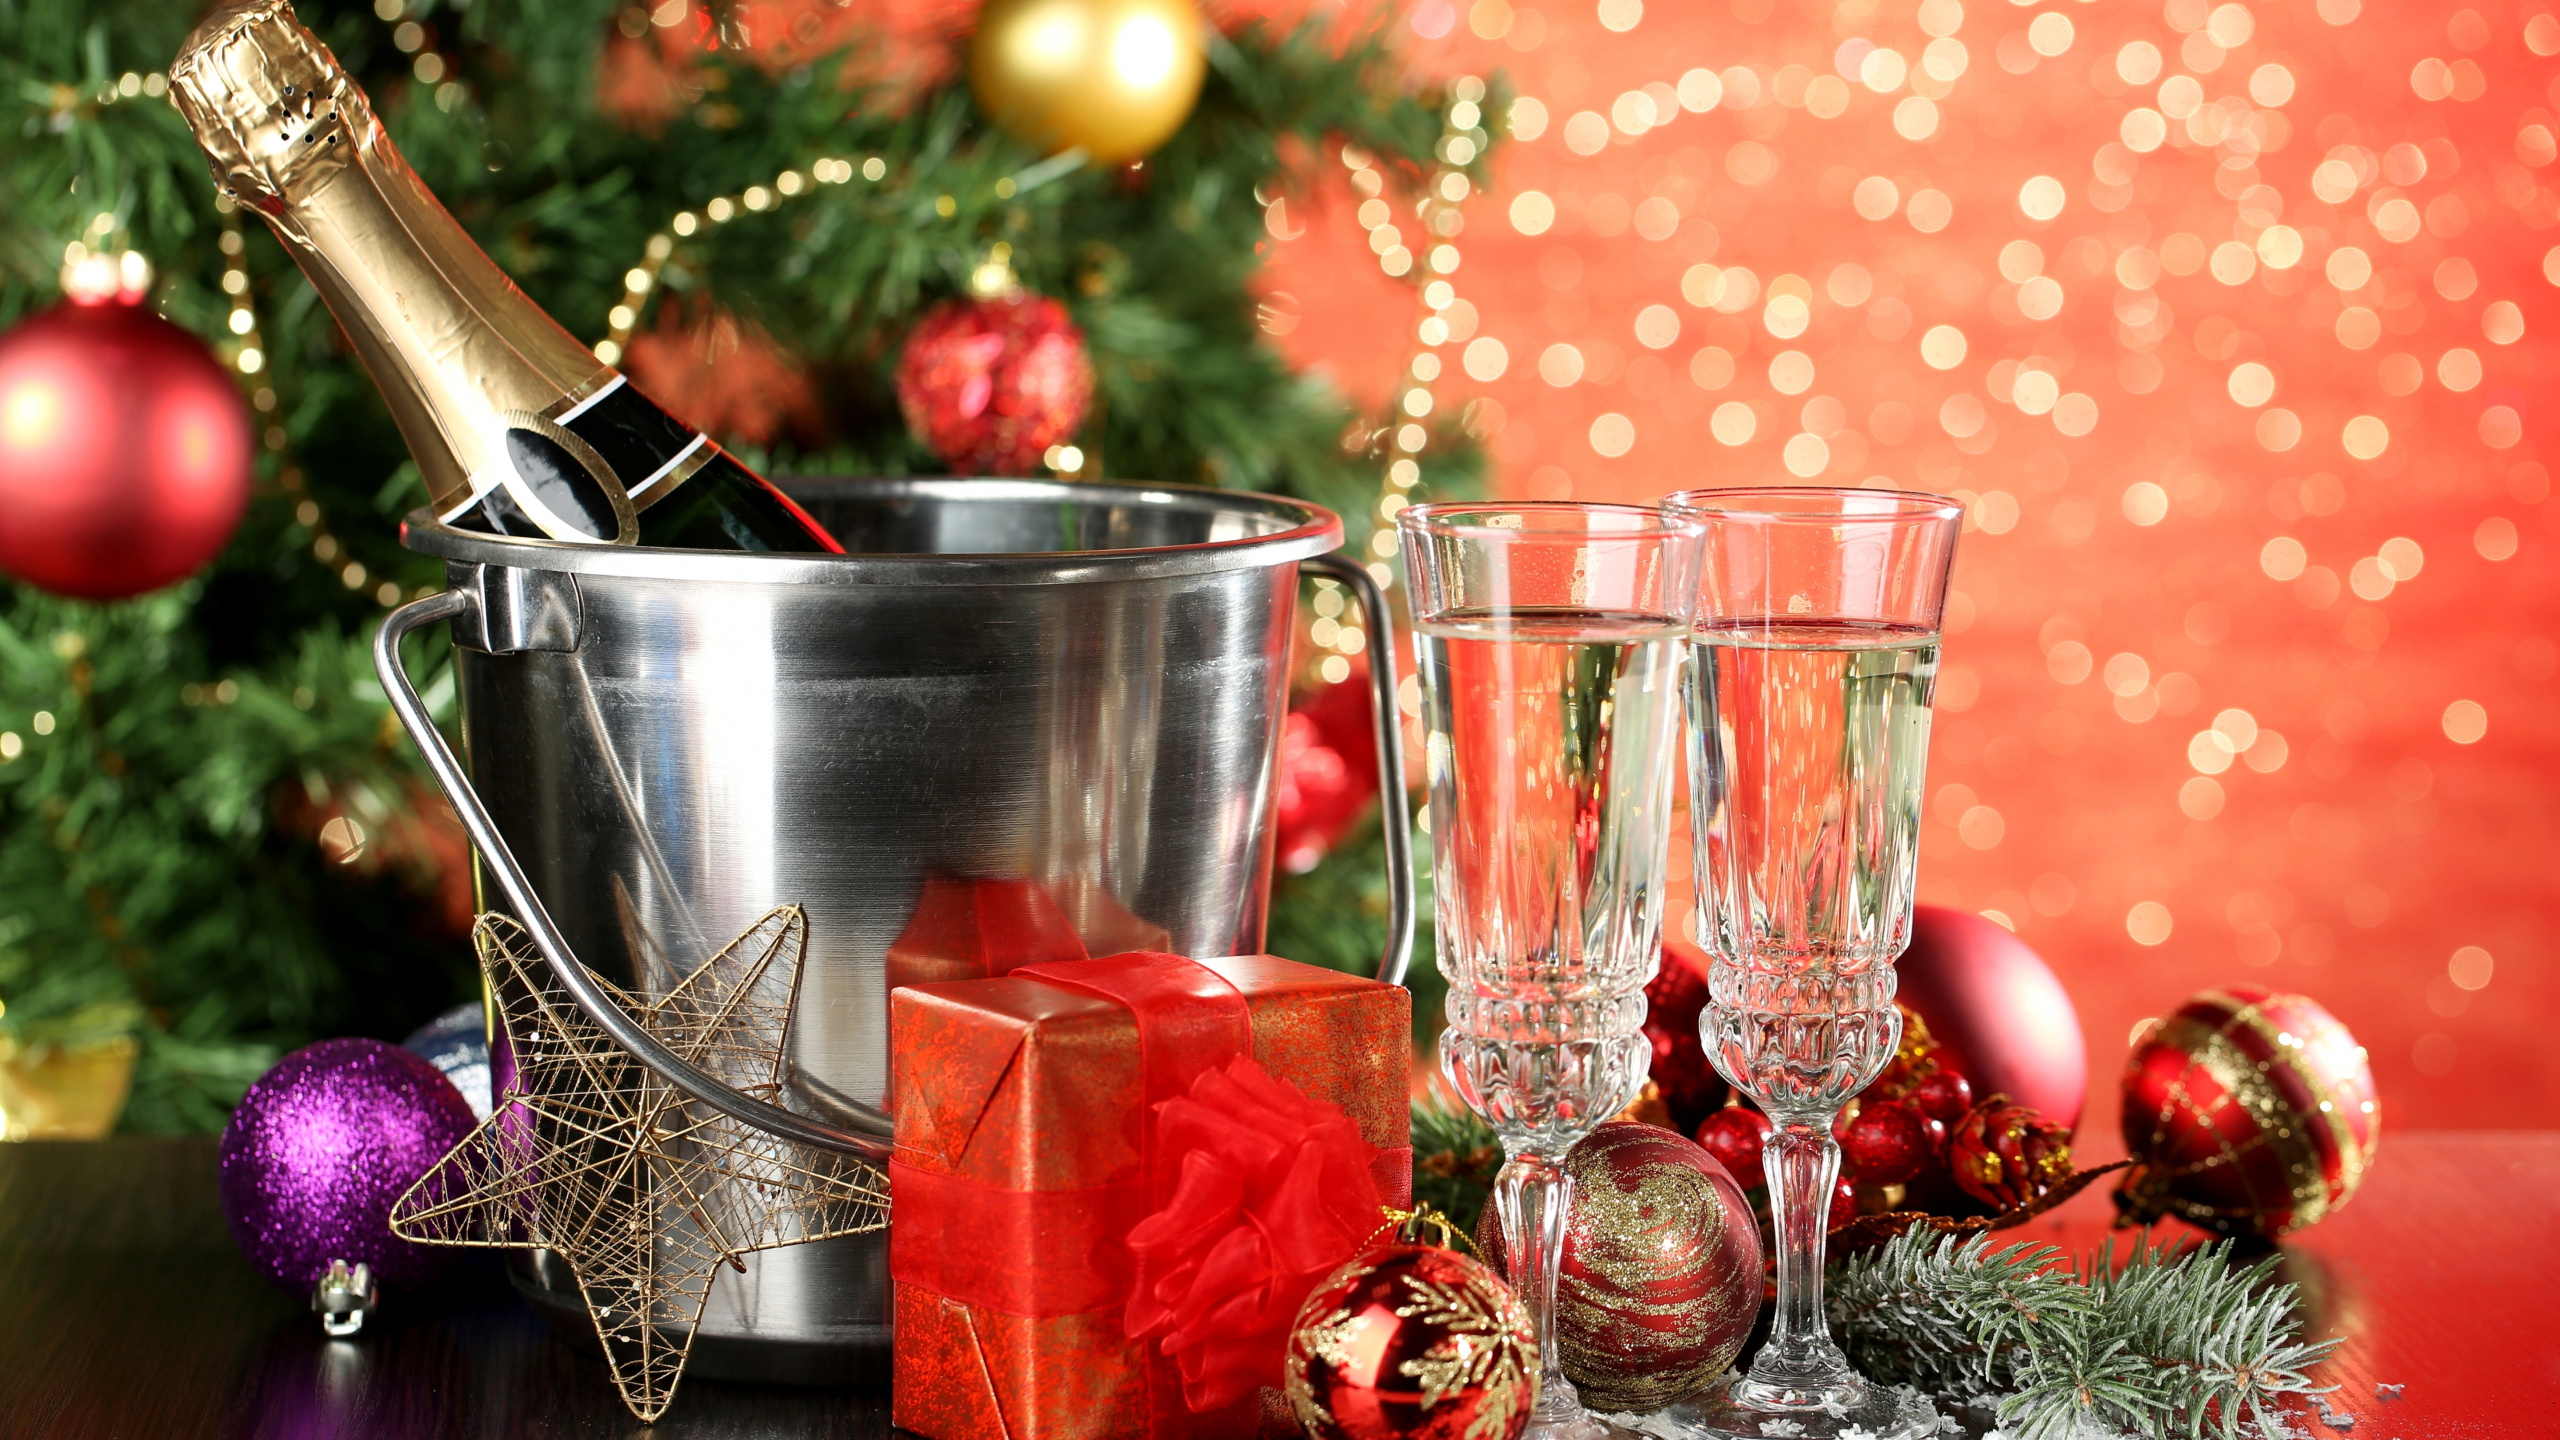 香槟, 新的一年, 圣诞节的装饰品, 圣诞装饰, 圣诞节 壁纸 2560x1440 允许